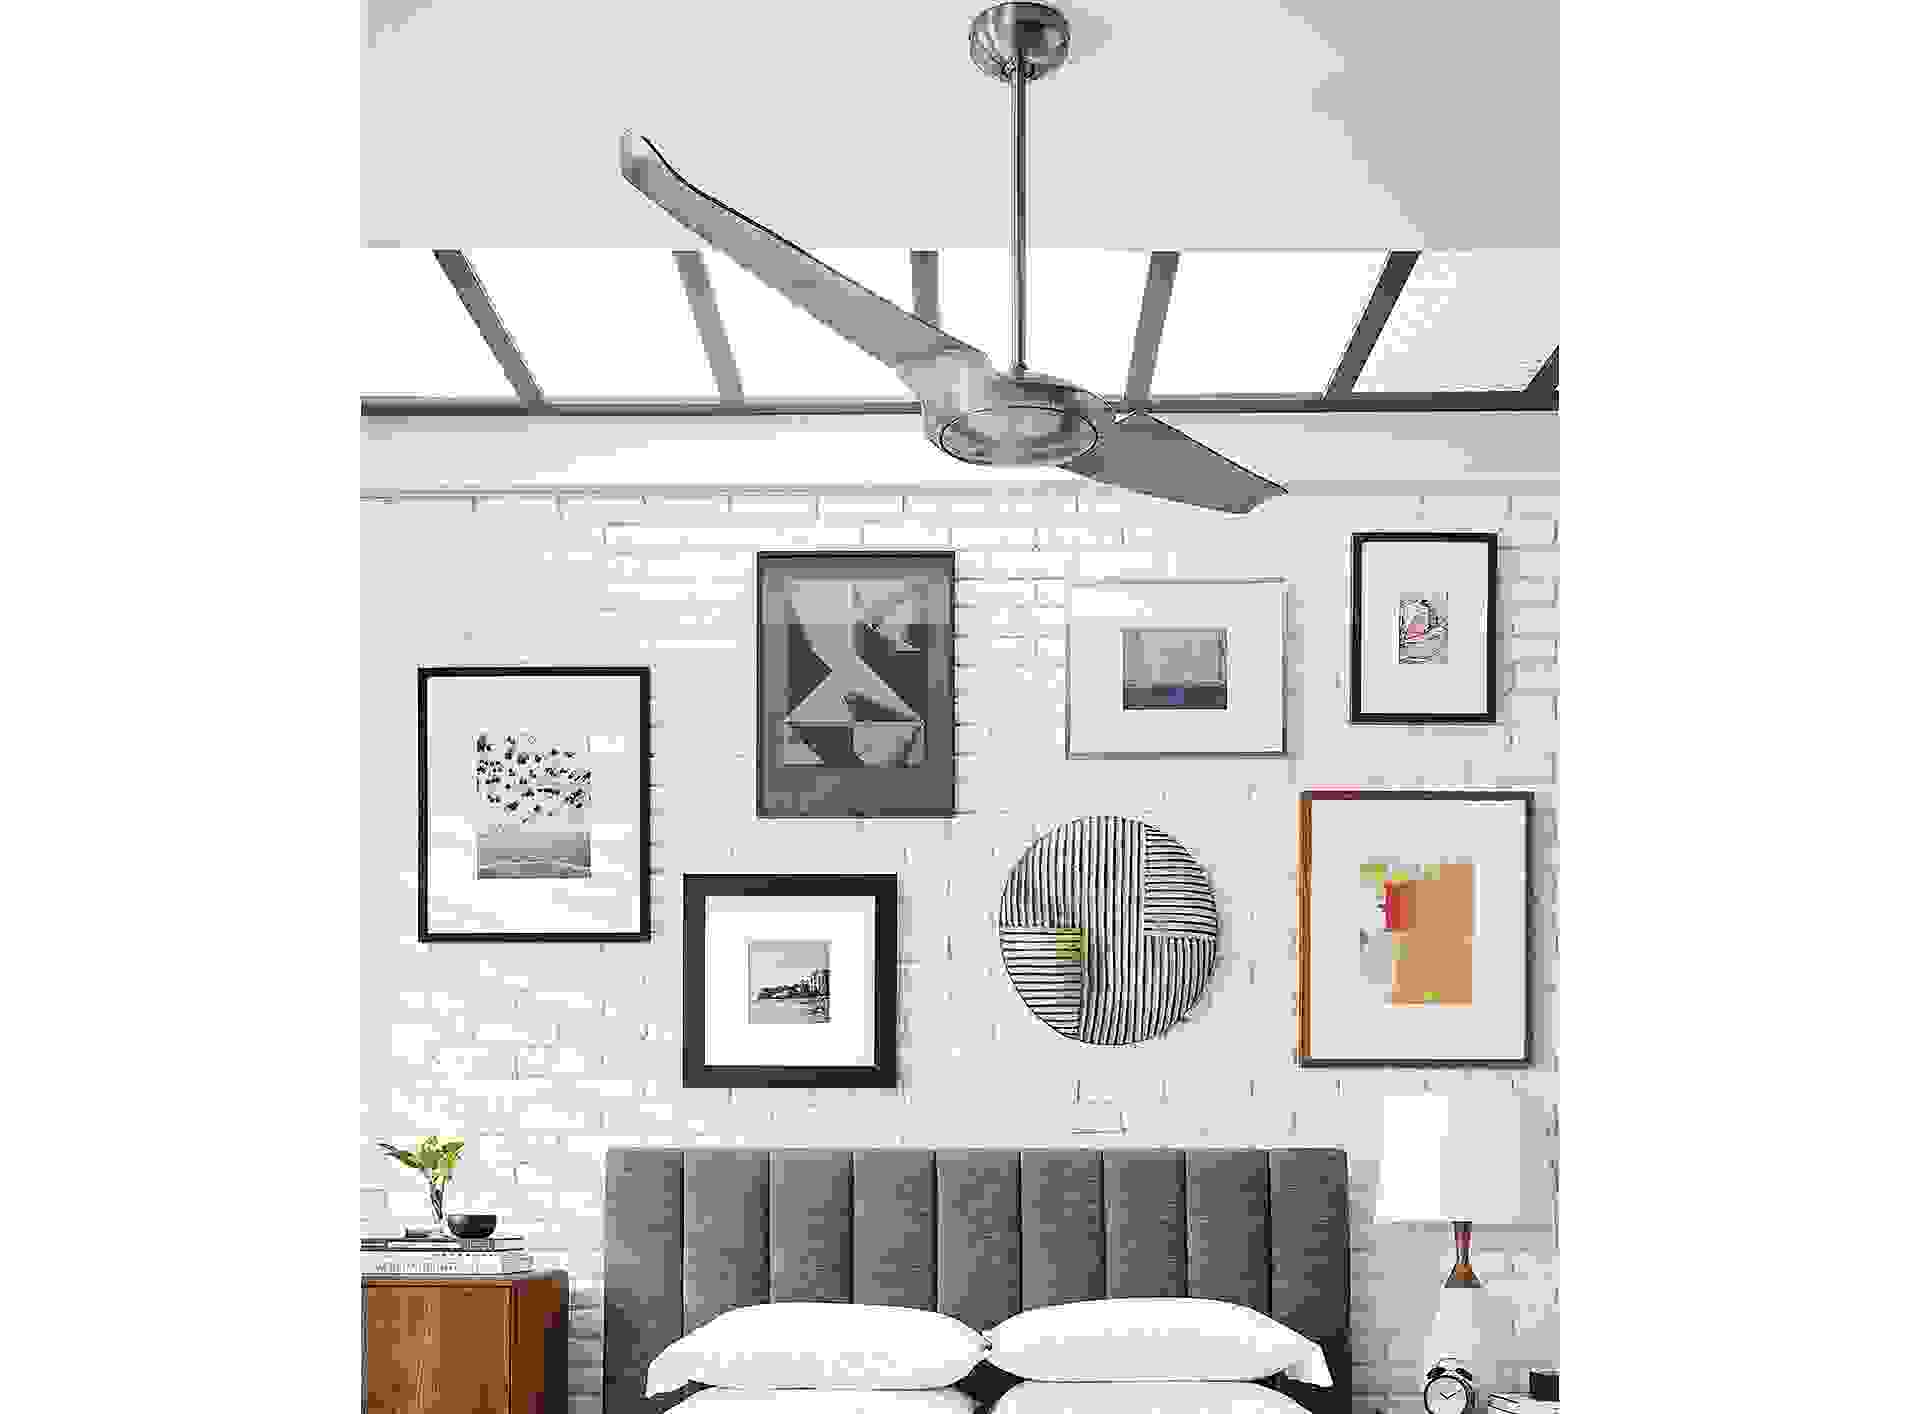 Detail of IC Air modern bedroom ceiling fan.